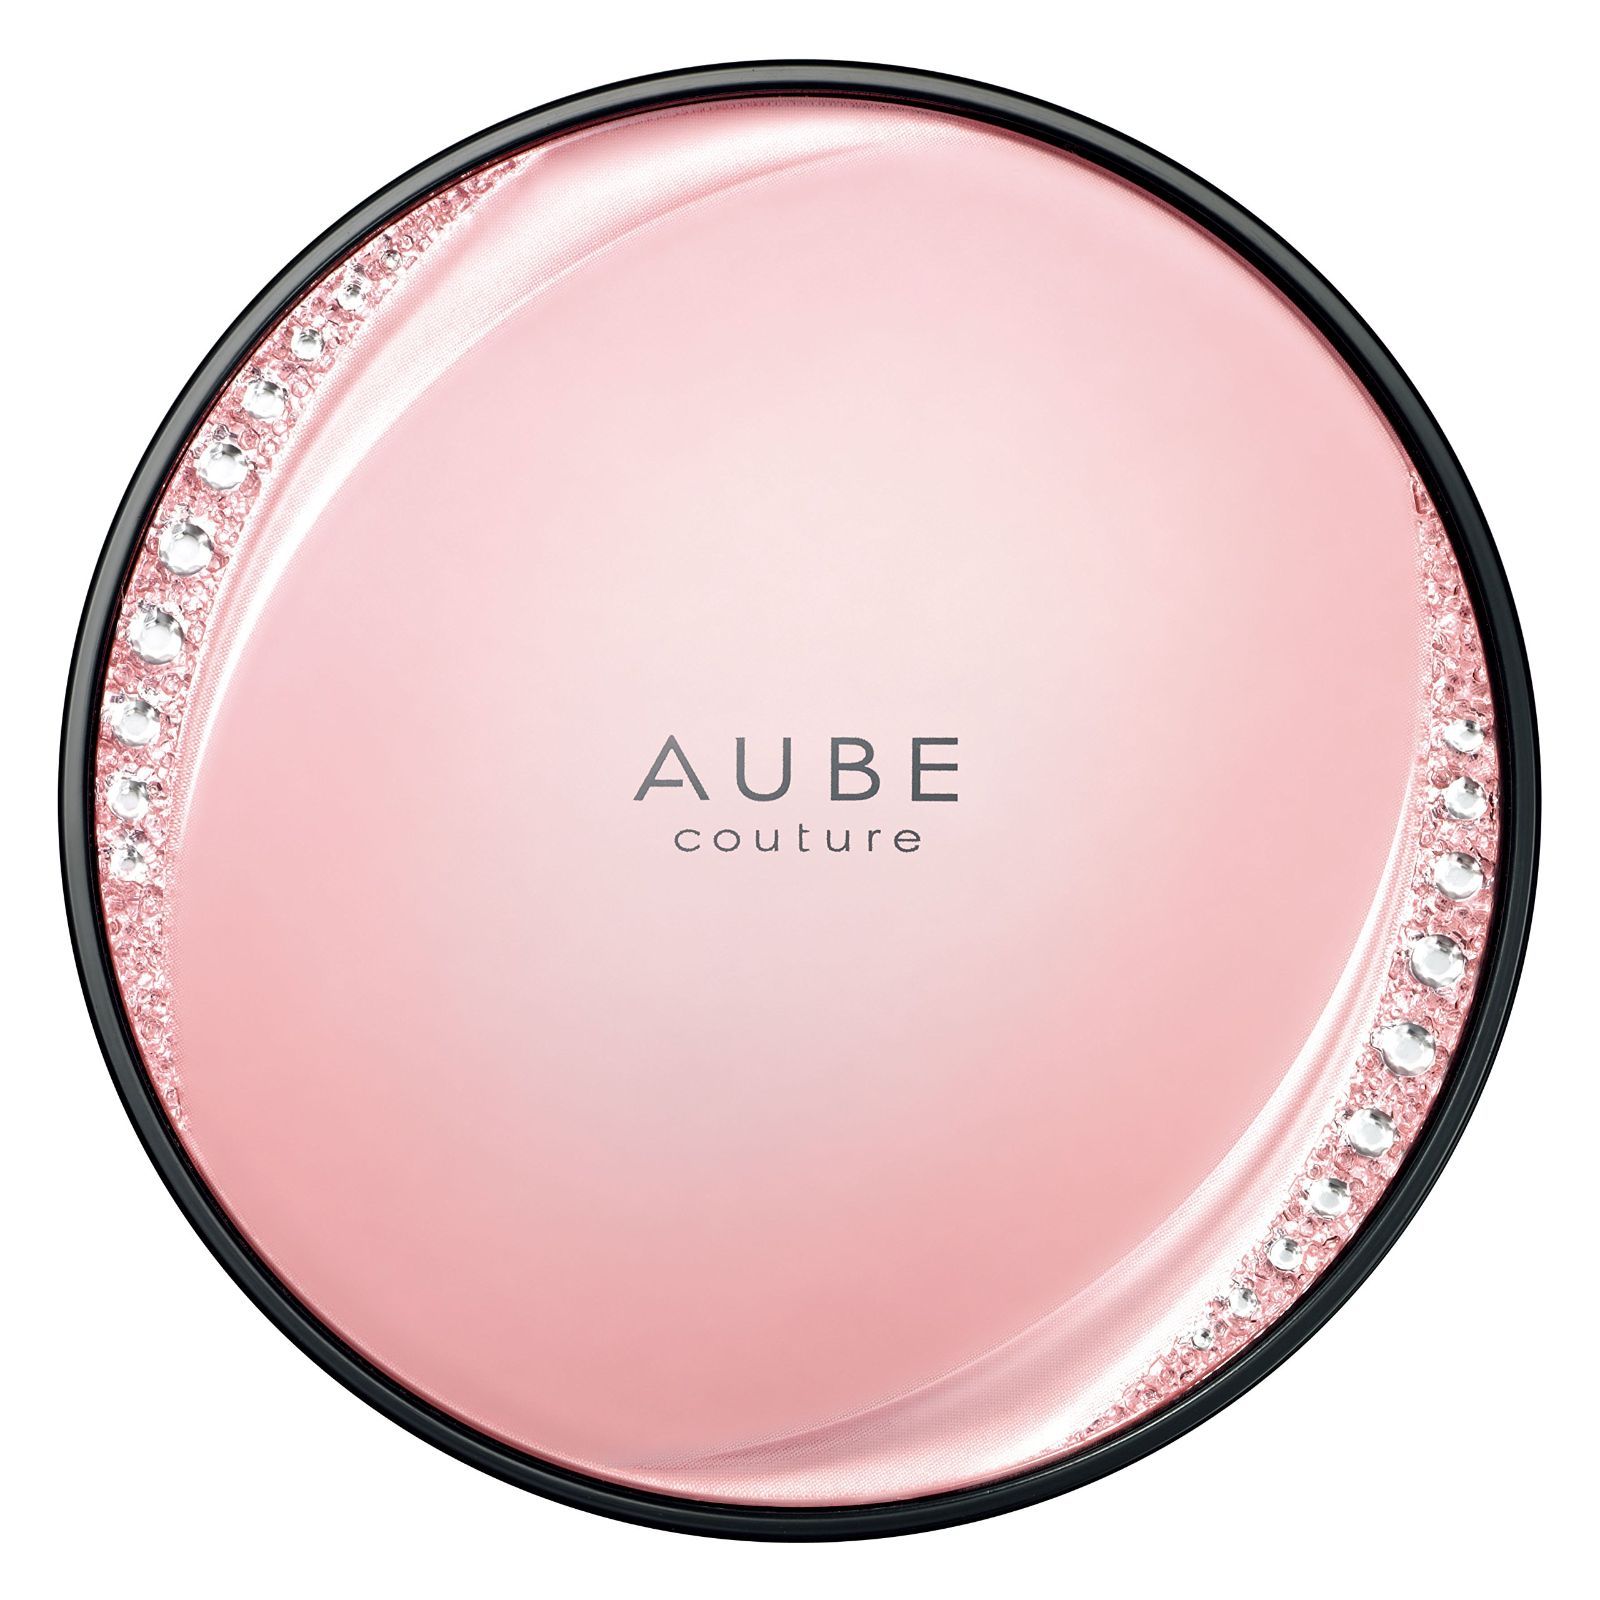 花王 AUBE couture（オーブクチュール） ブラシチーク ブラシチークつめかえ用レフィル 02 標準的な肌色に 7g